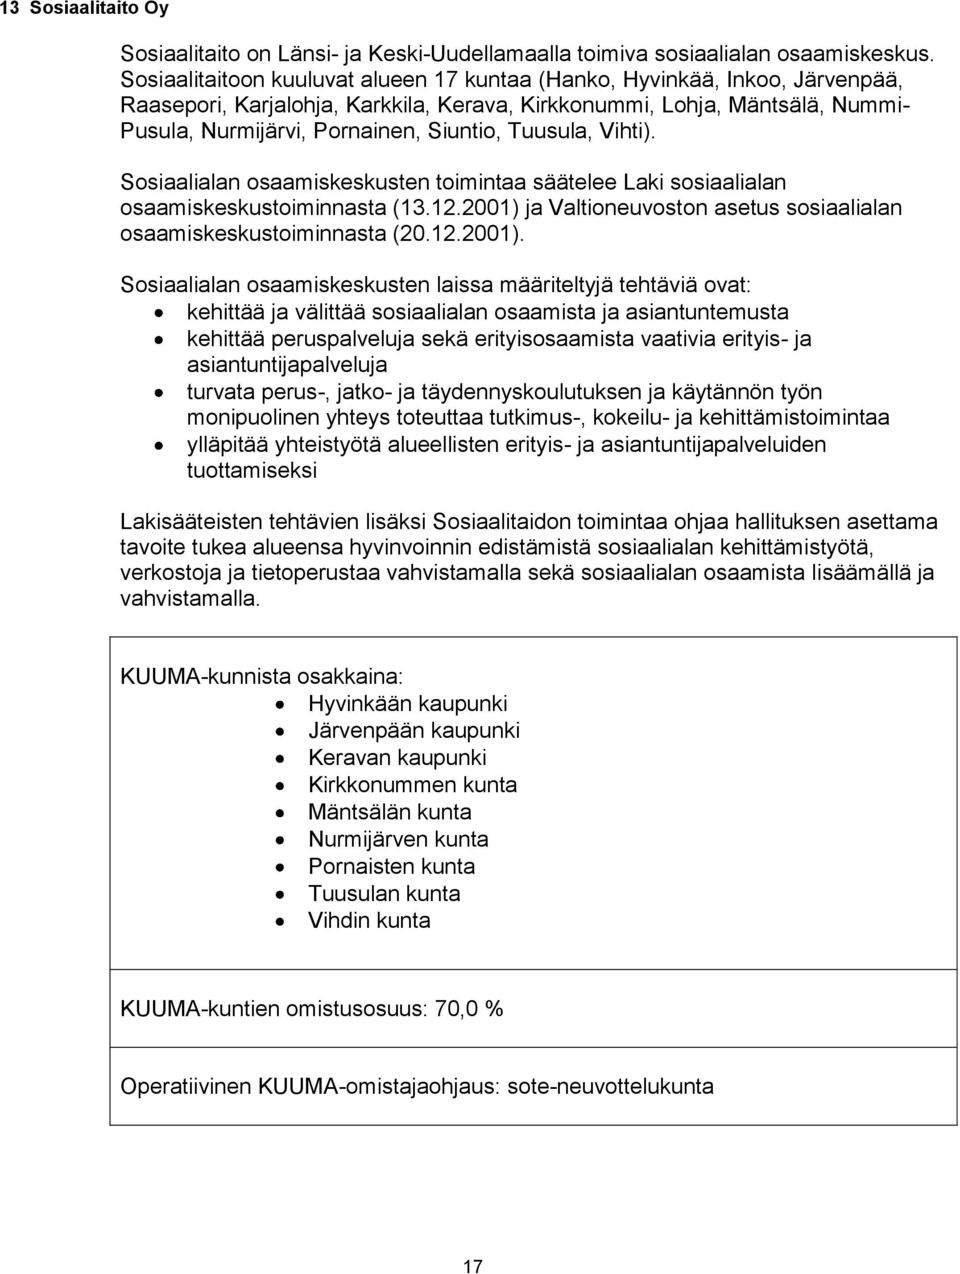 Tuusula, Vihti). Sosiaalialan osaamiskeskusten toimintaa säätelee Laki sosiaalialan osaamiskeskustoiminnasta (13.12.2001) 